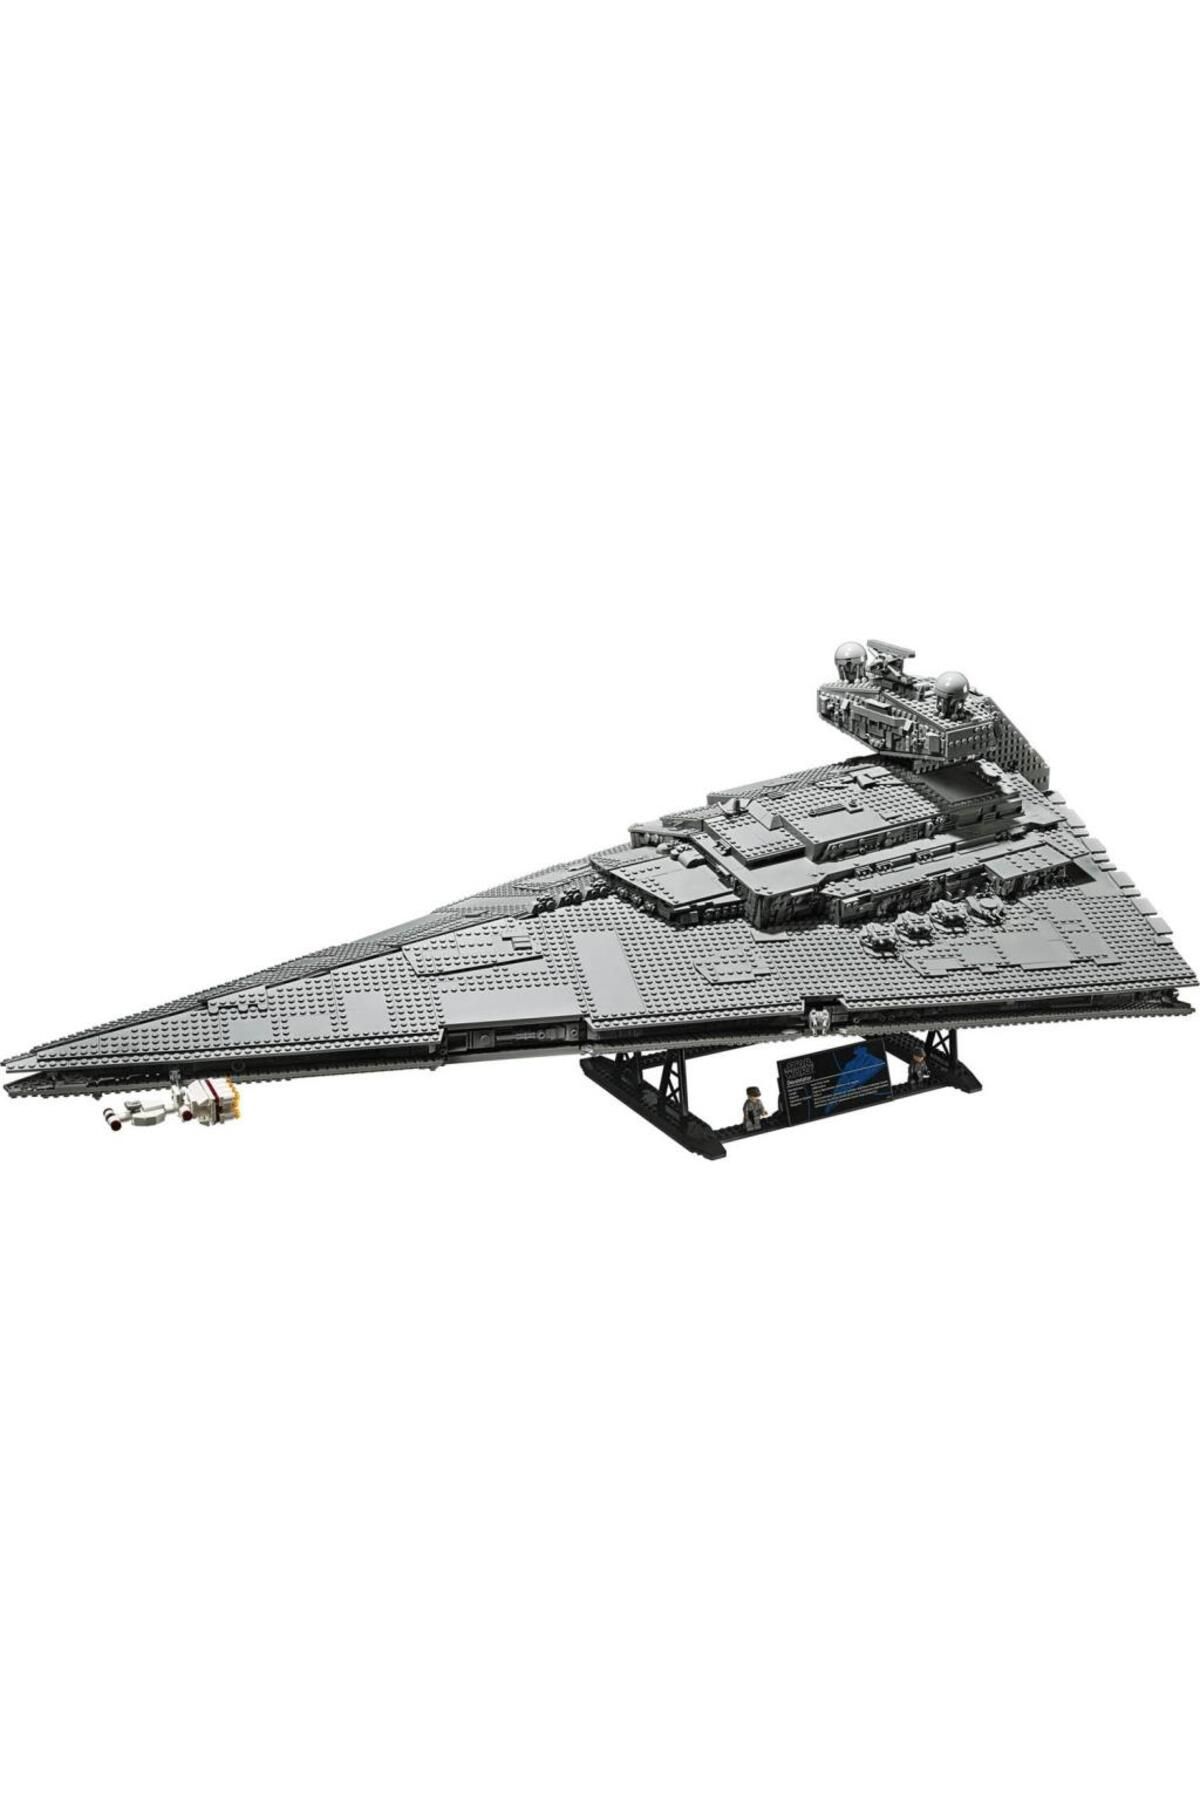 LEGO Star Wars 75252 Imperial Star Destroyer Ucs